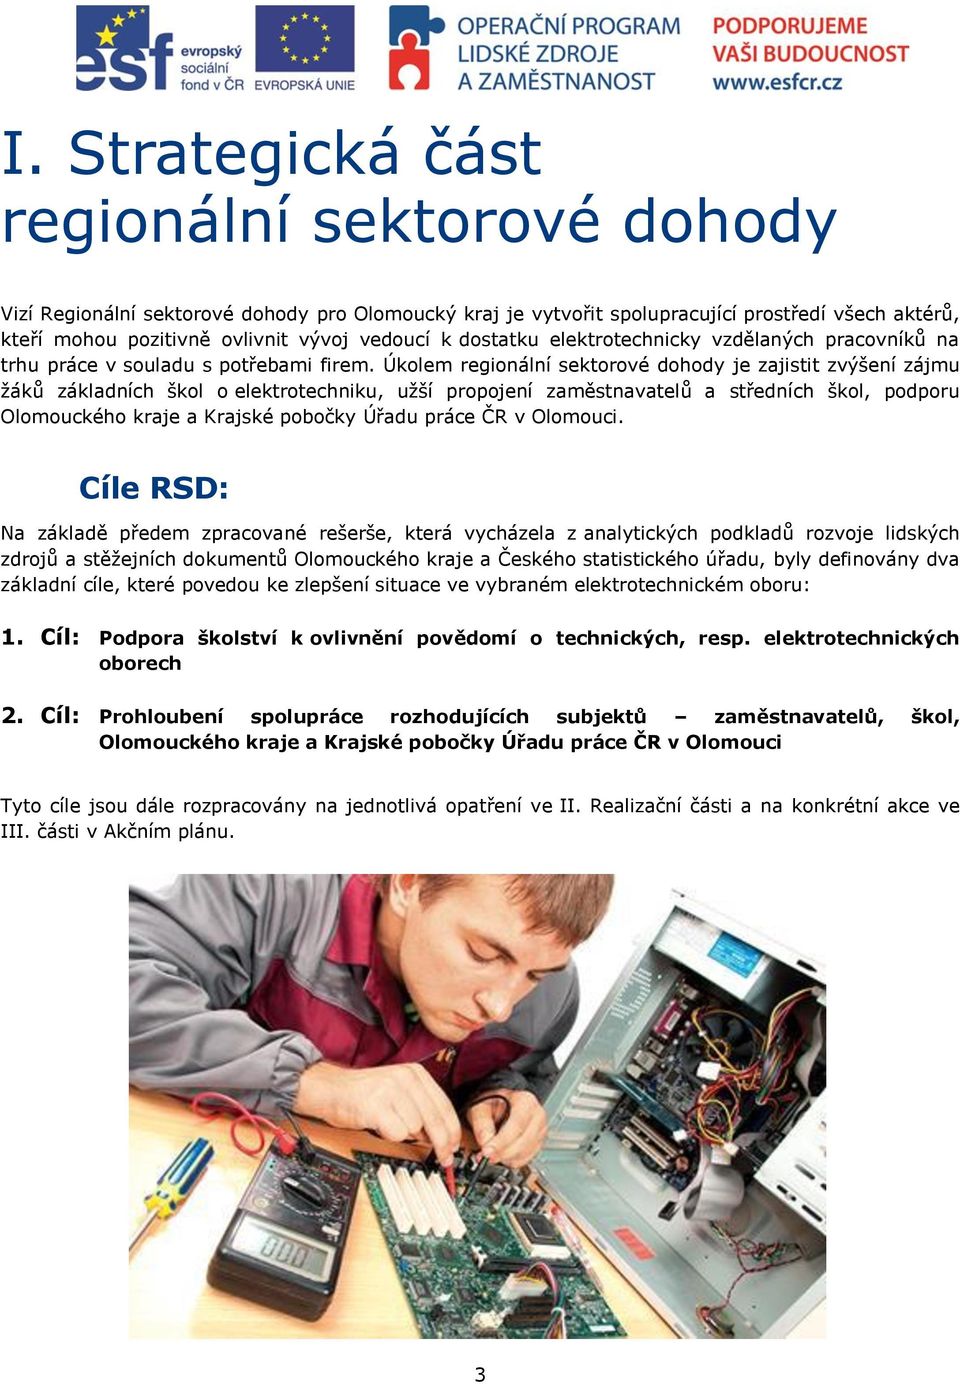 Úkolem regionální sektorové dohody je zajistit zvýšení zájmu žáků základních škol o elektrotechniku, užší propojení zaměstnavatelů a středních škol, podporu Olomouckého kraje a Krajské pobočky Úřadu